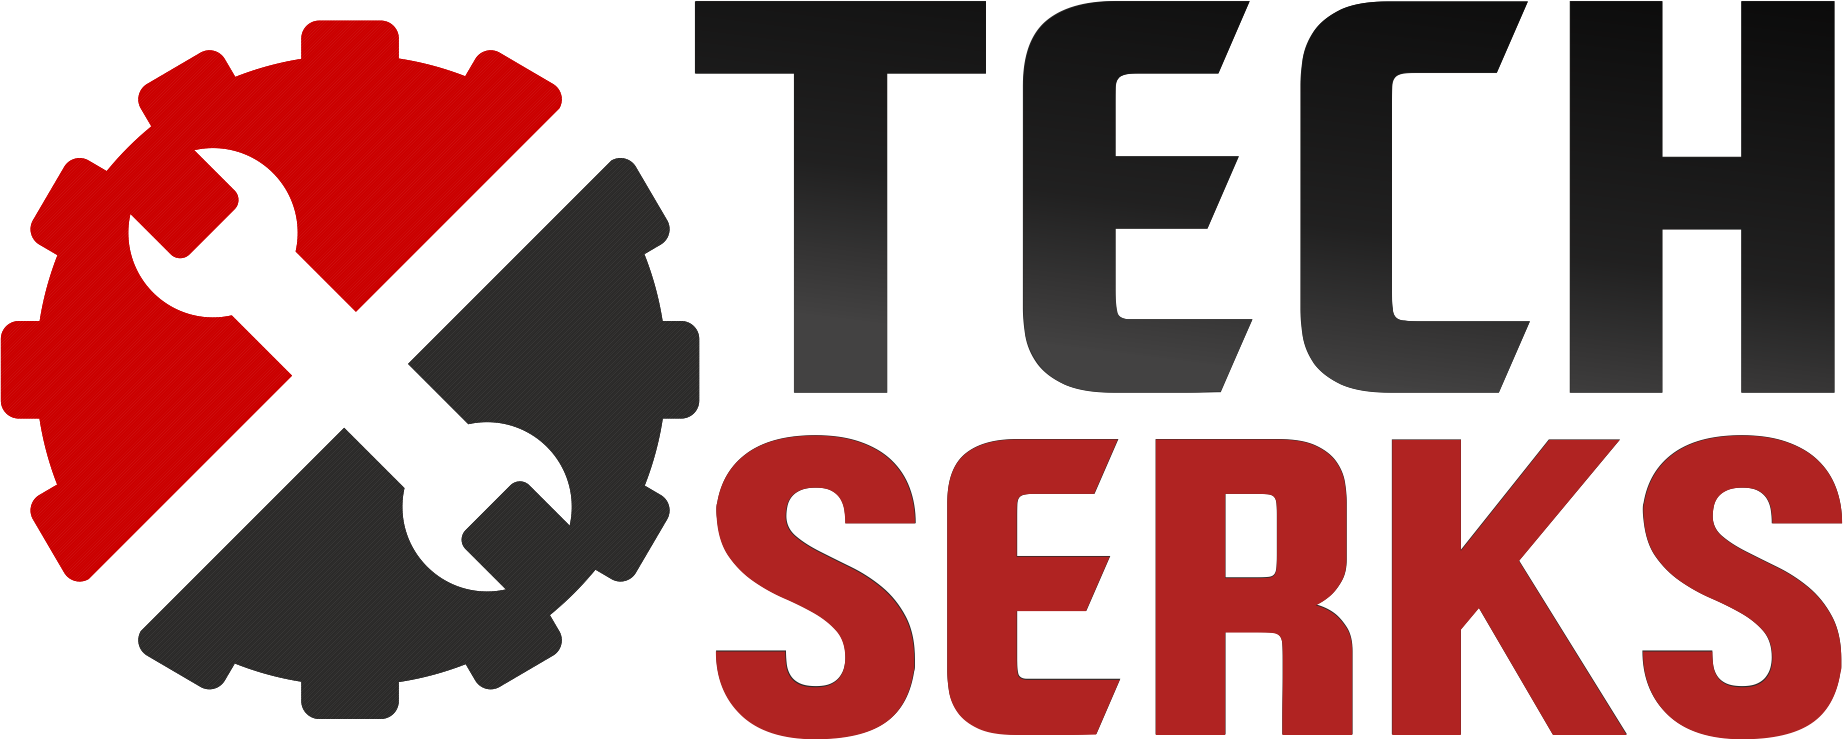 TechSerks Logo